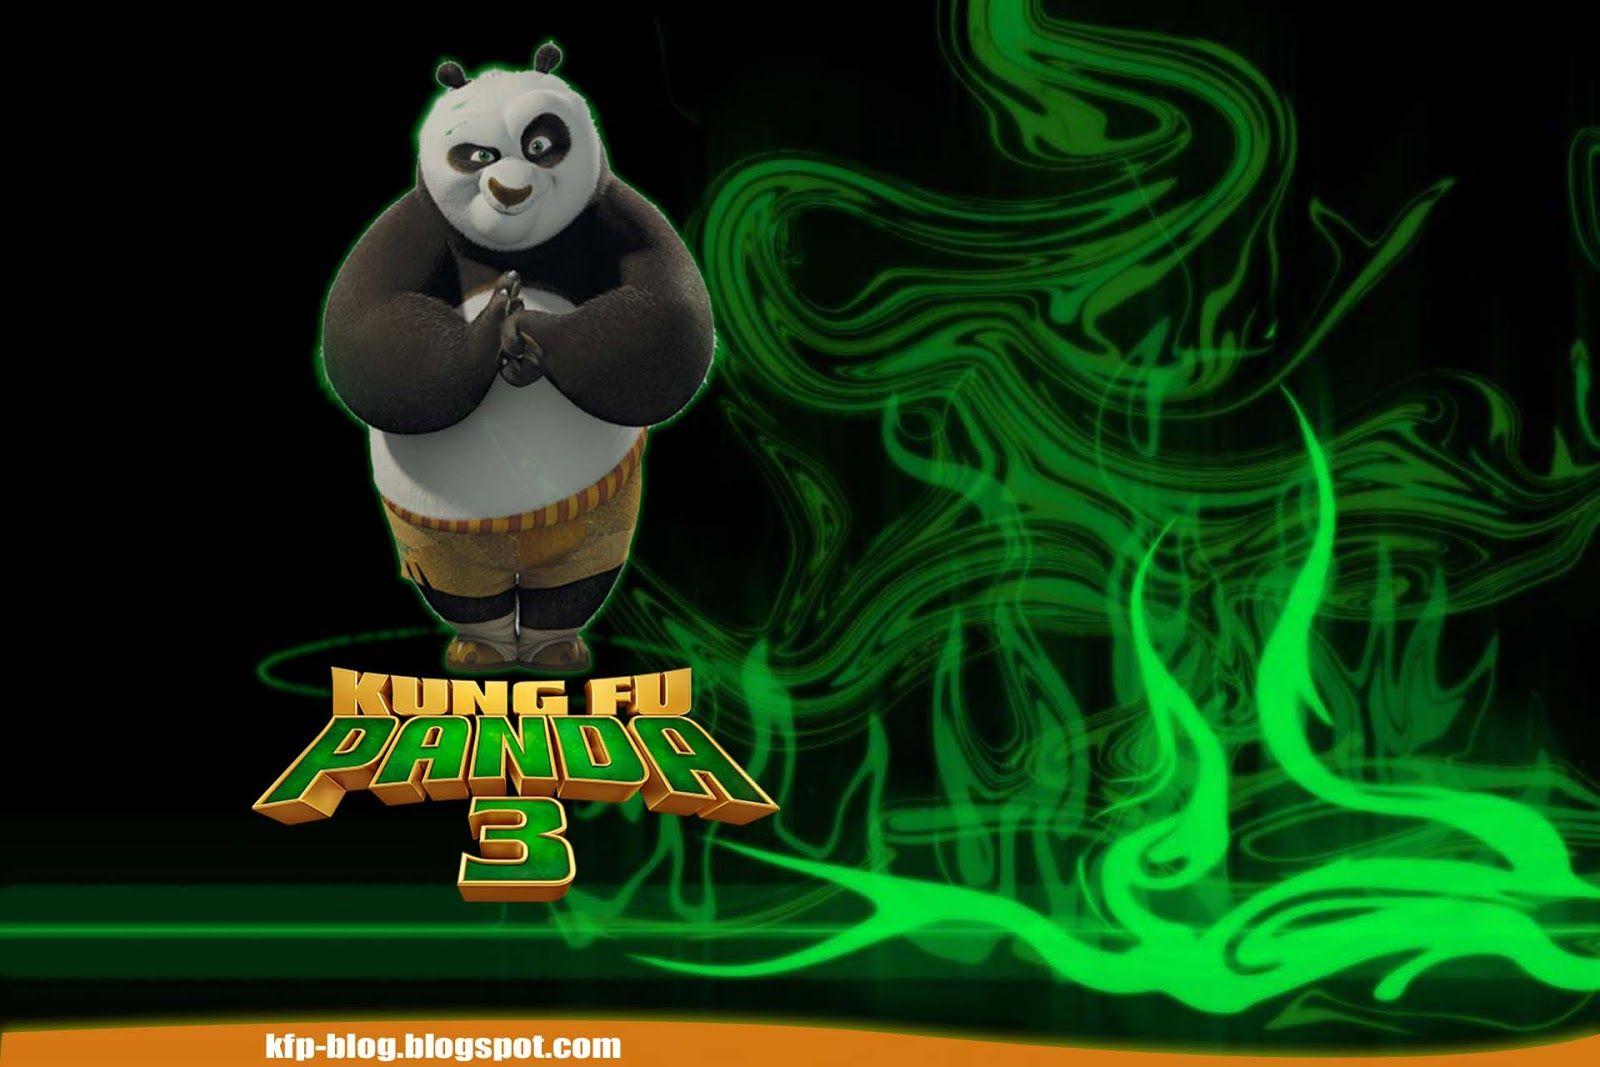 Kung Fu Panda Series HD Wallpaper, Reviews and News: Kung Fu